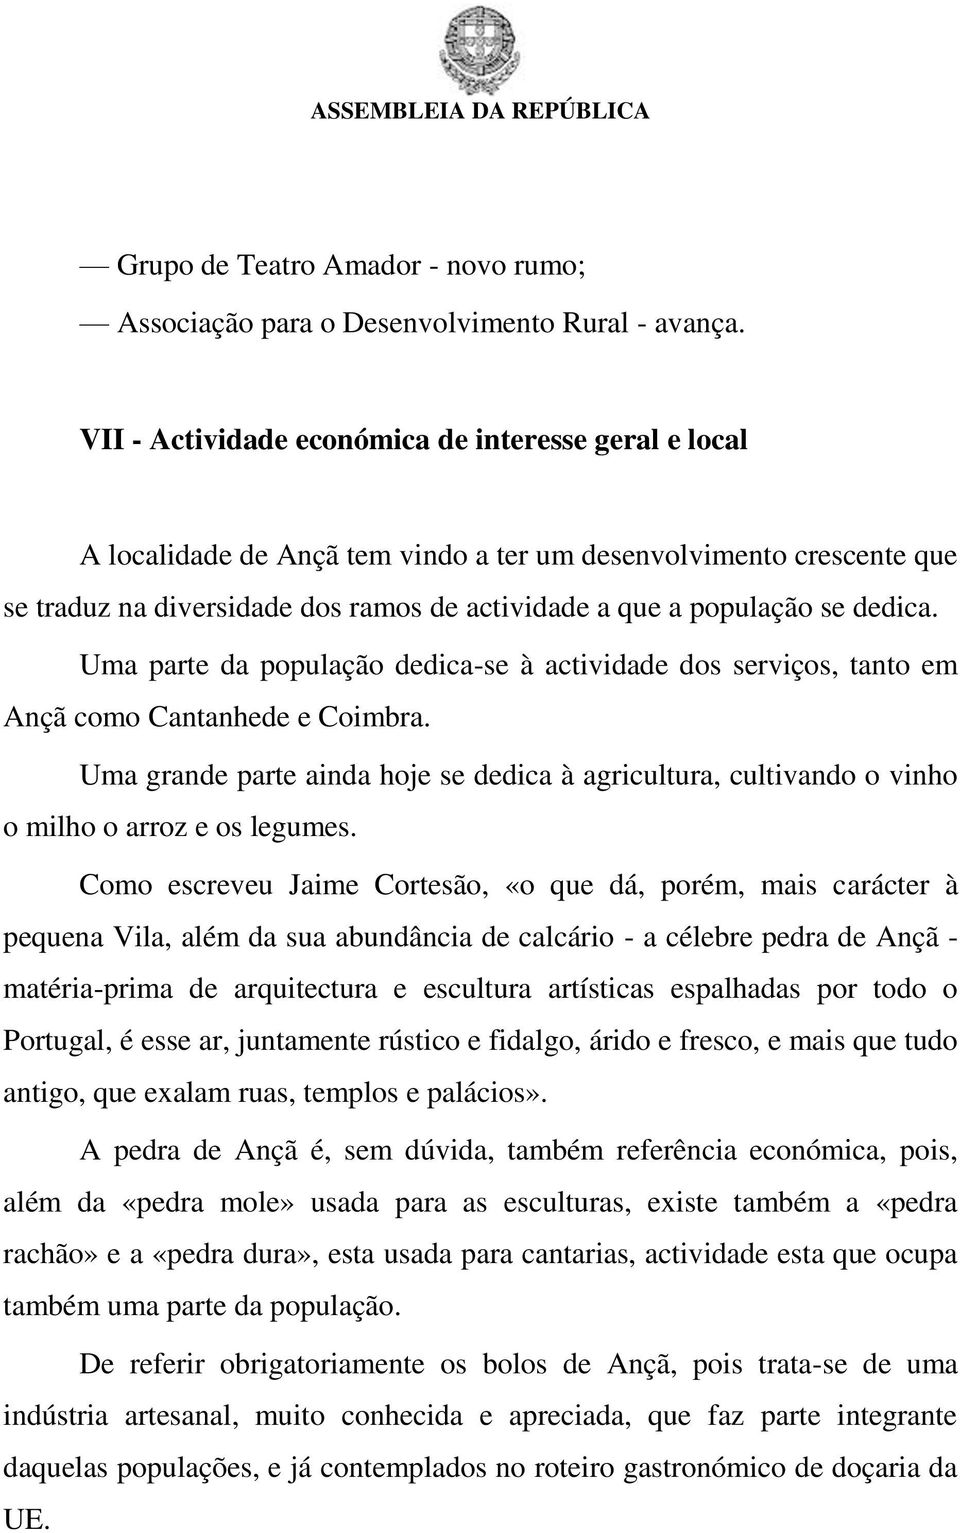 dedica. Uma parte da população dedica-se à actividade dos serviços, tanto em Ançã como Cantanhede e Coimbra.